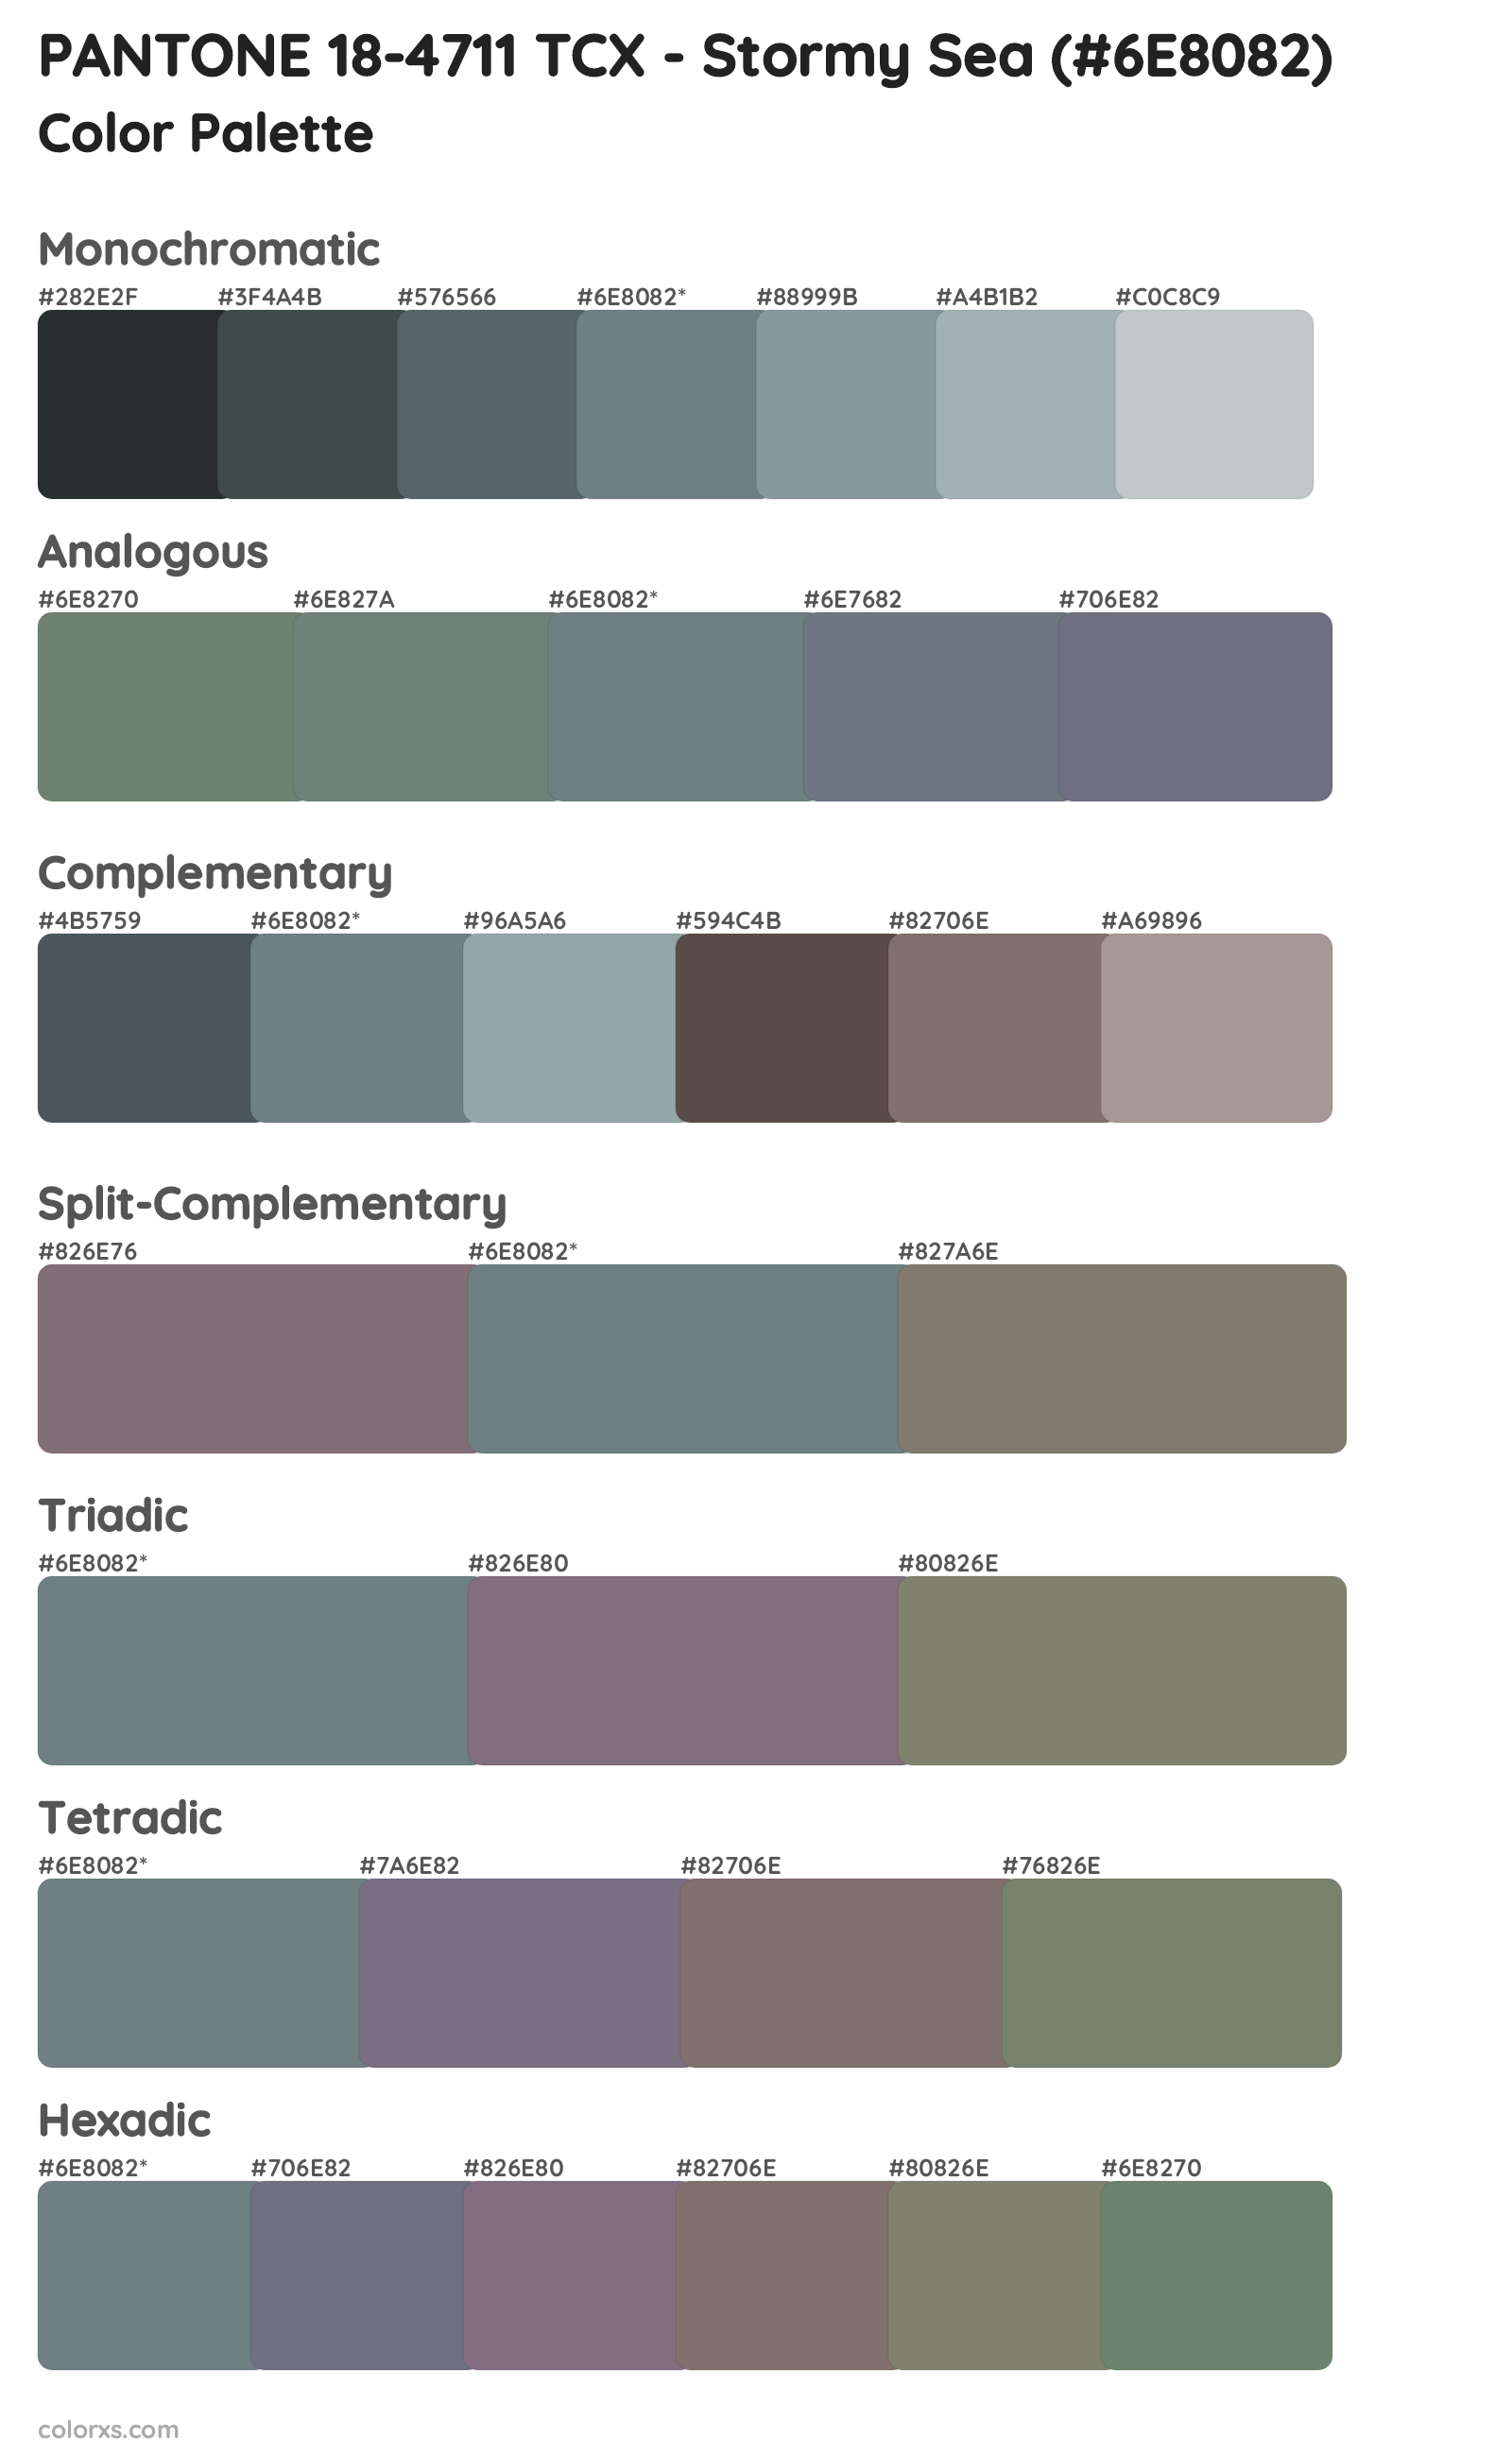 PANTONE 18-4711 TCX - Stormy Sea Color Scheme Palettes